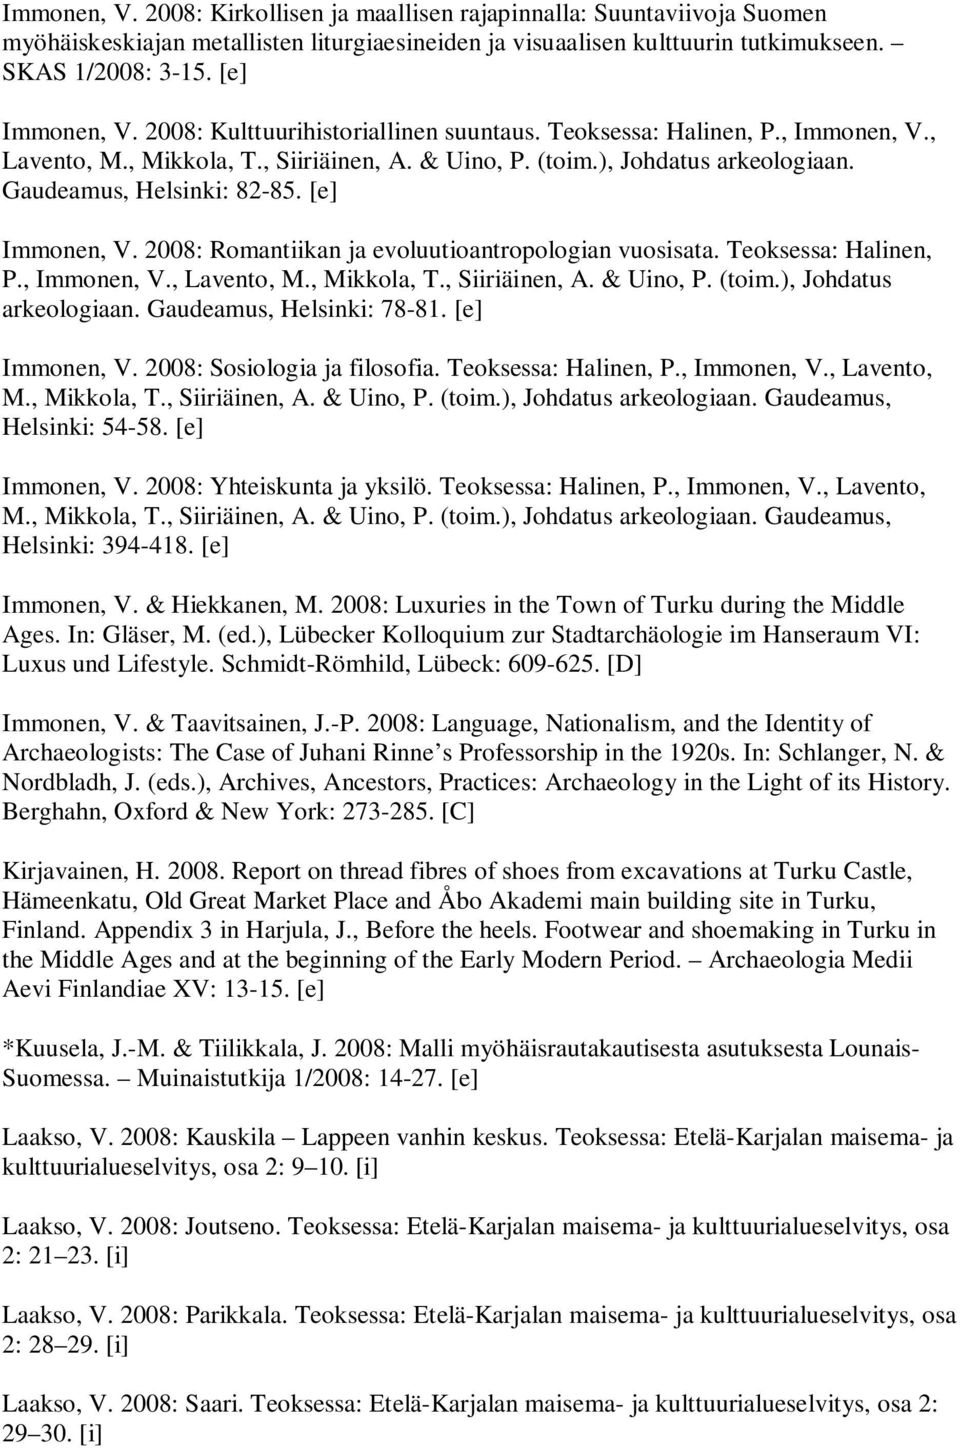 [e] Immonen, V. 2008: Romantiikan ja evoluutioantropologian vuosisata. Teoksessa: Halinen, P., Immonen, V., Lavento, M., Mikkola, T., Siiriäinen, A. & Uino, P. (toim.), Johdatus arkeologiaan.